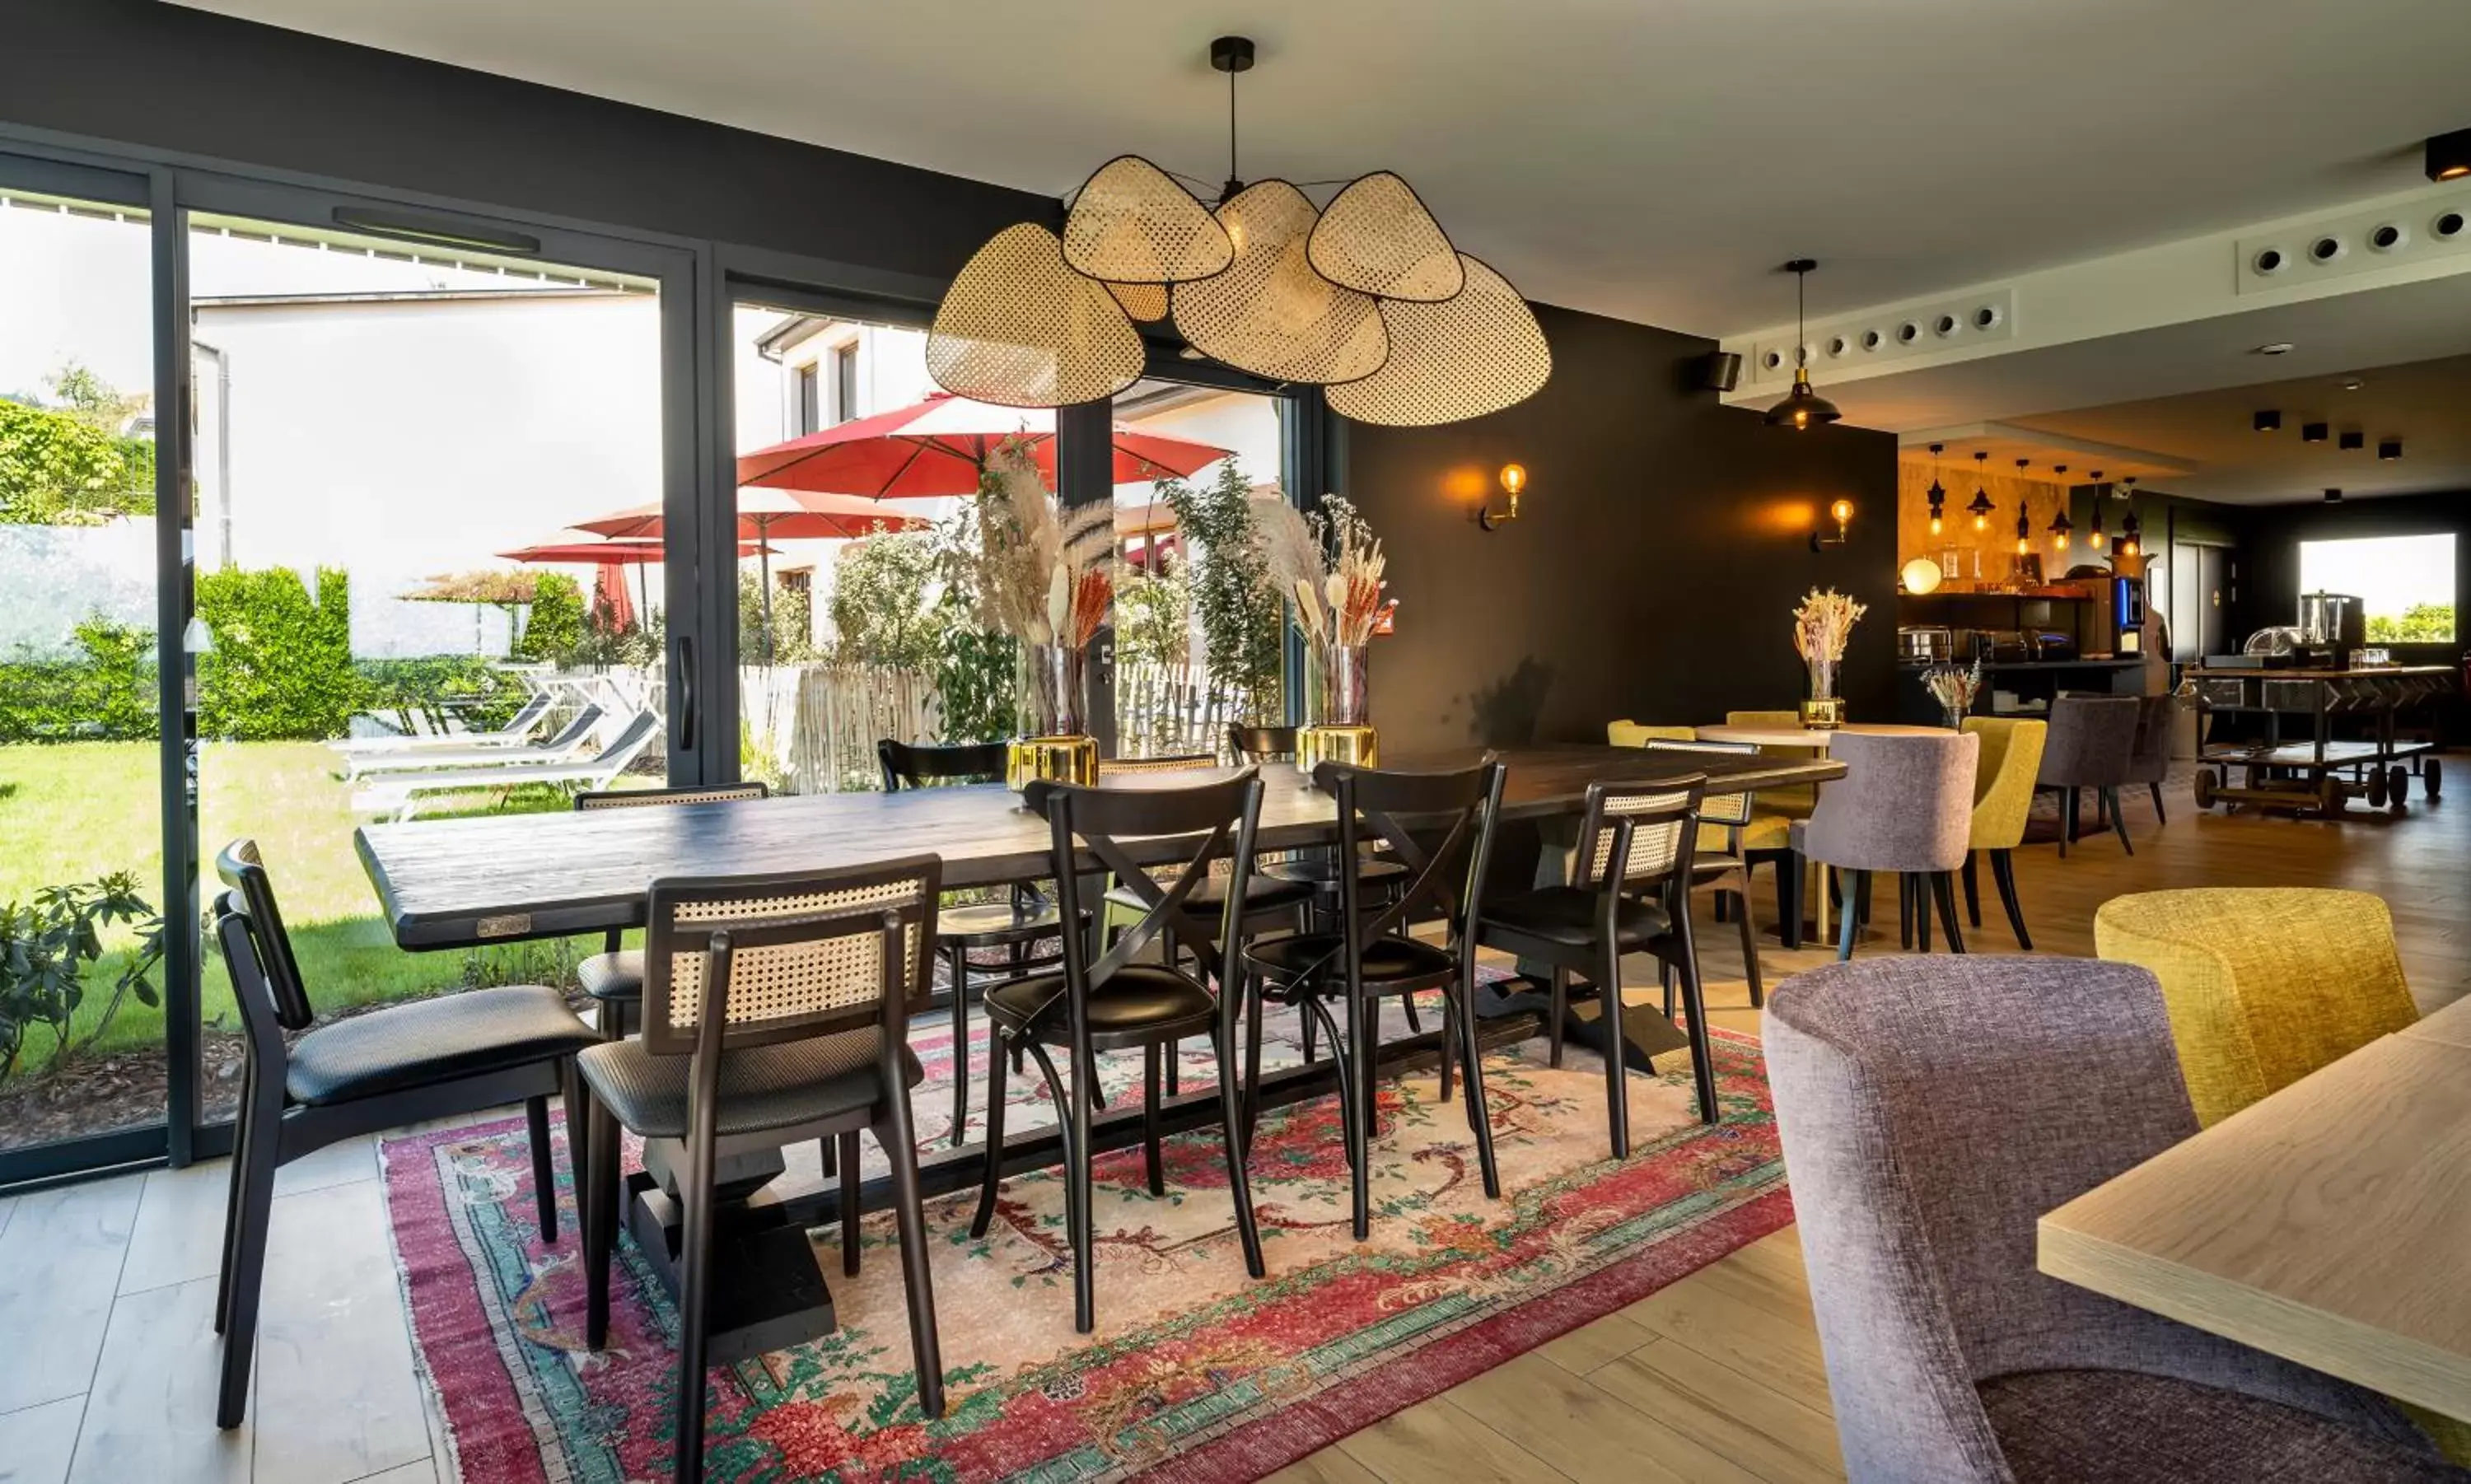 Lounge or bar in James Vignoble Hôtel, Eguisheim